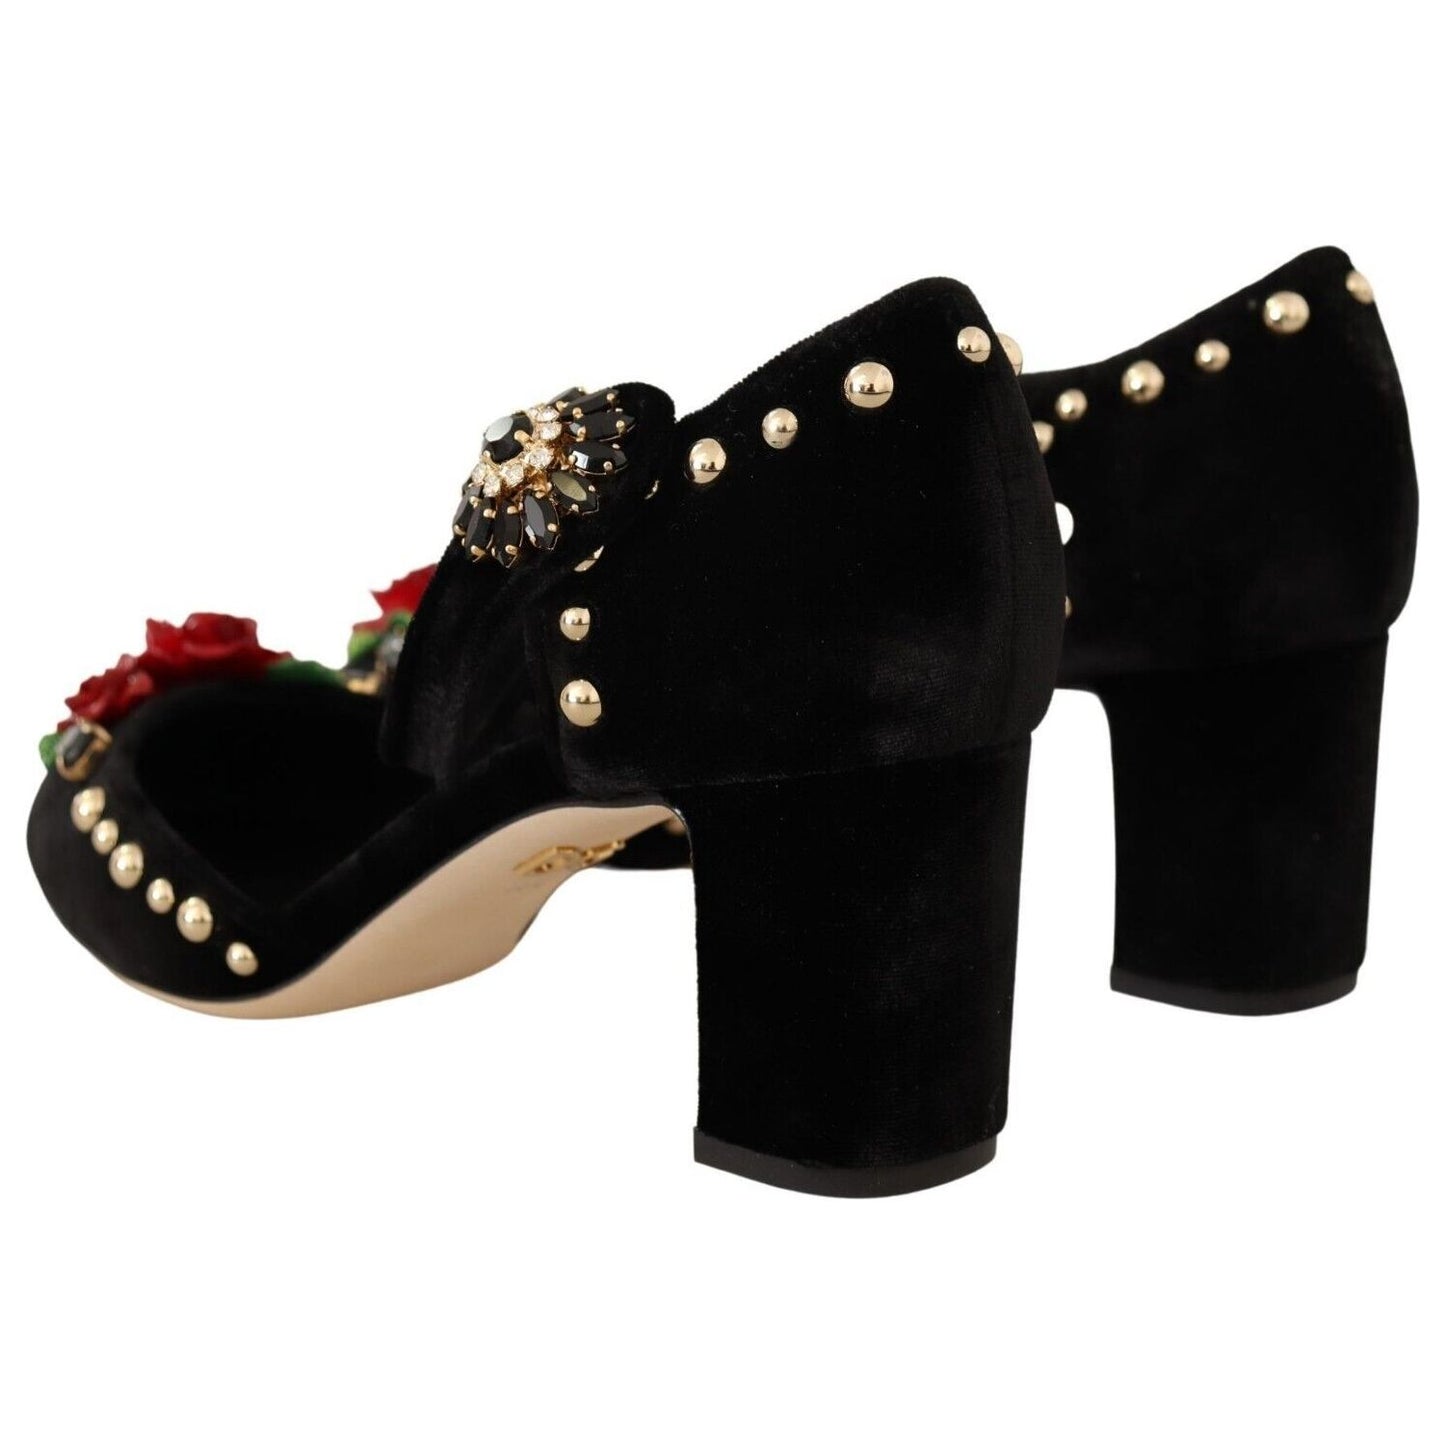 Dolce & Gabbana Elegant Velvet Studded Heels with Floral Accent Pumps black-velvet-roses-ankle-strap-pumps-shoes